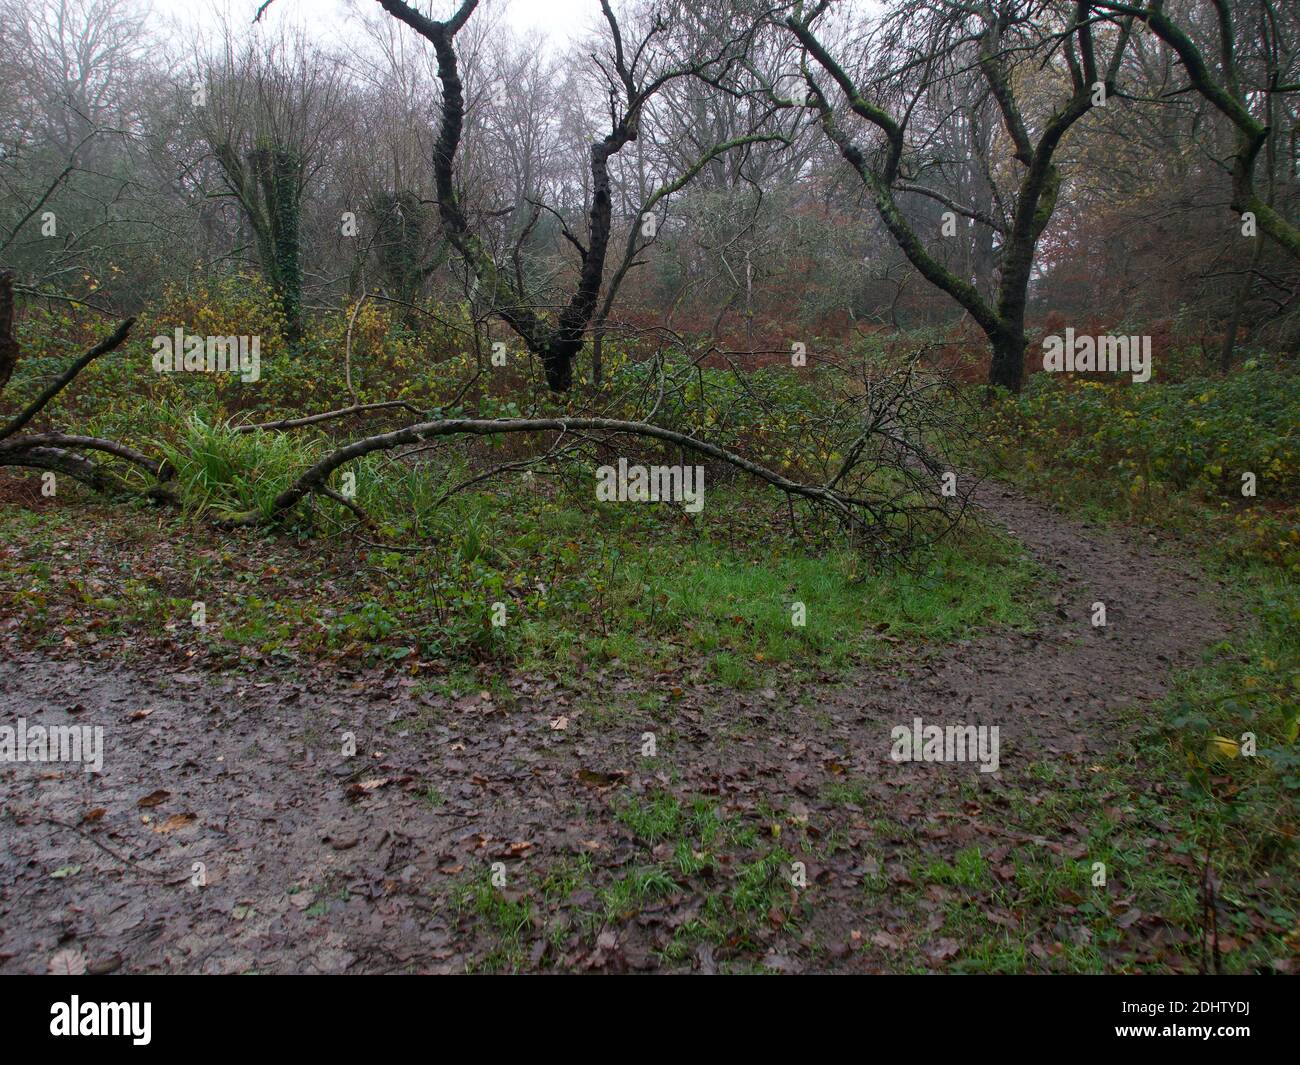 Woodland scena autunnale in inverno mostrando sentiero fangoso e rami caduti. Foto di alta qualità Foto Stock